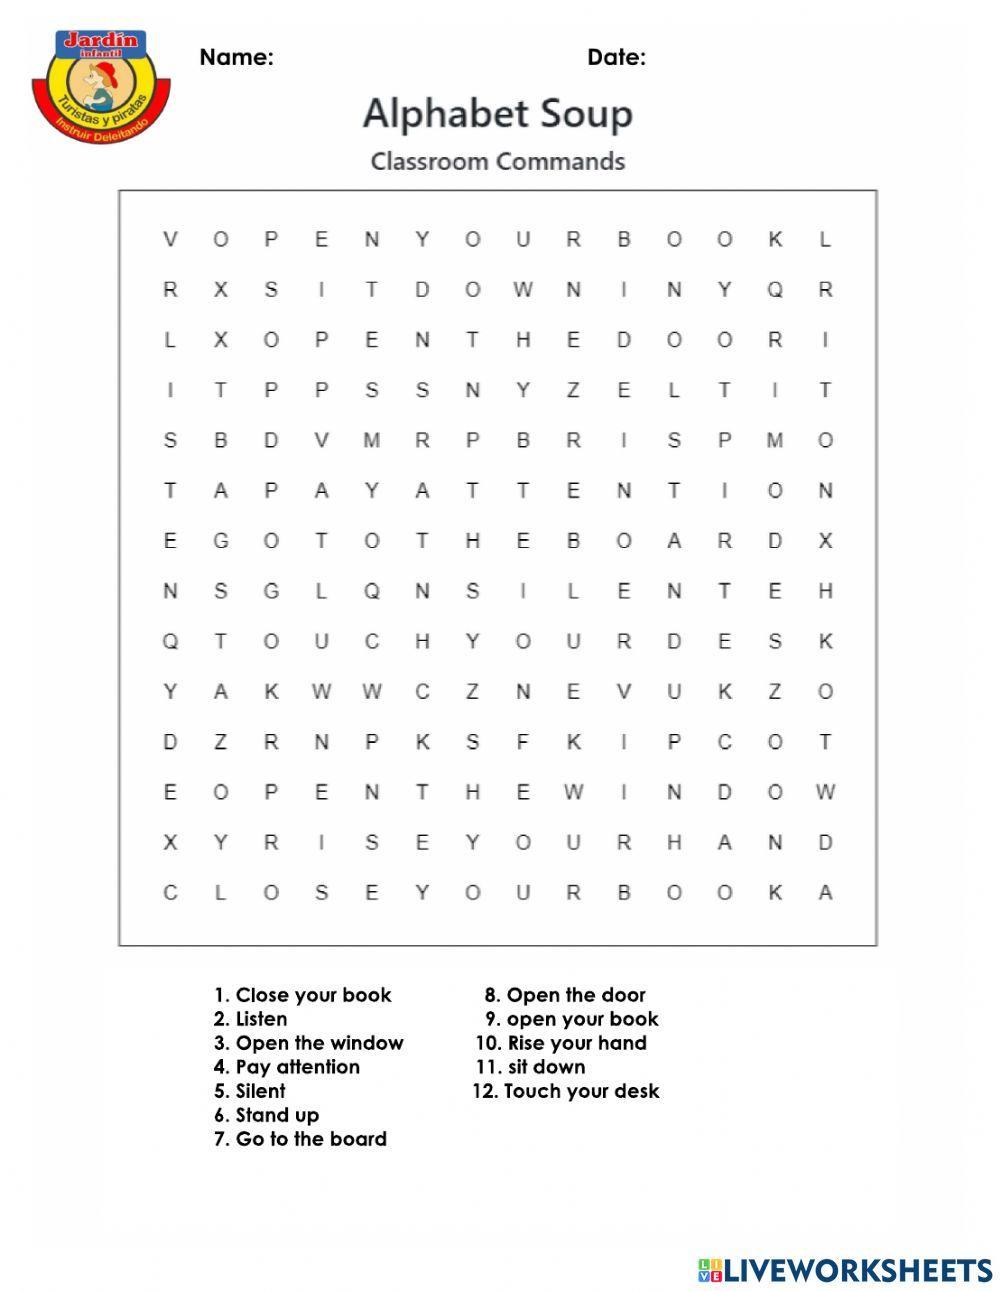 Alphabet soup classroom commands